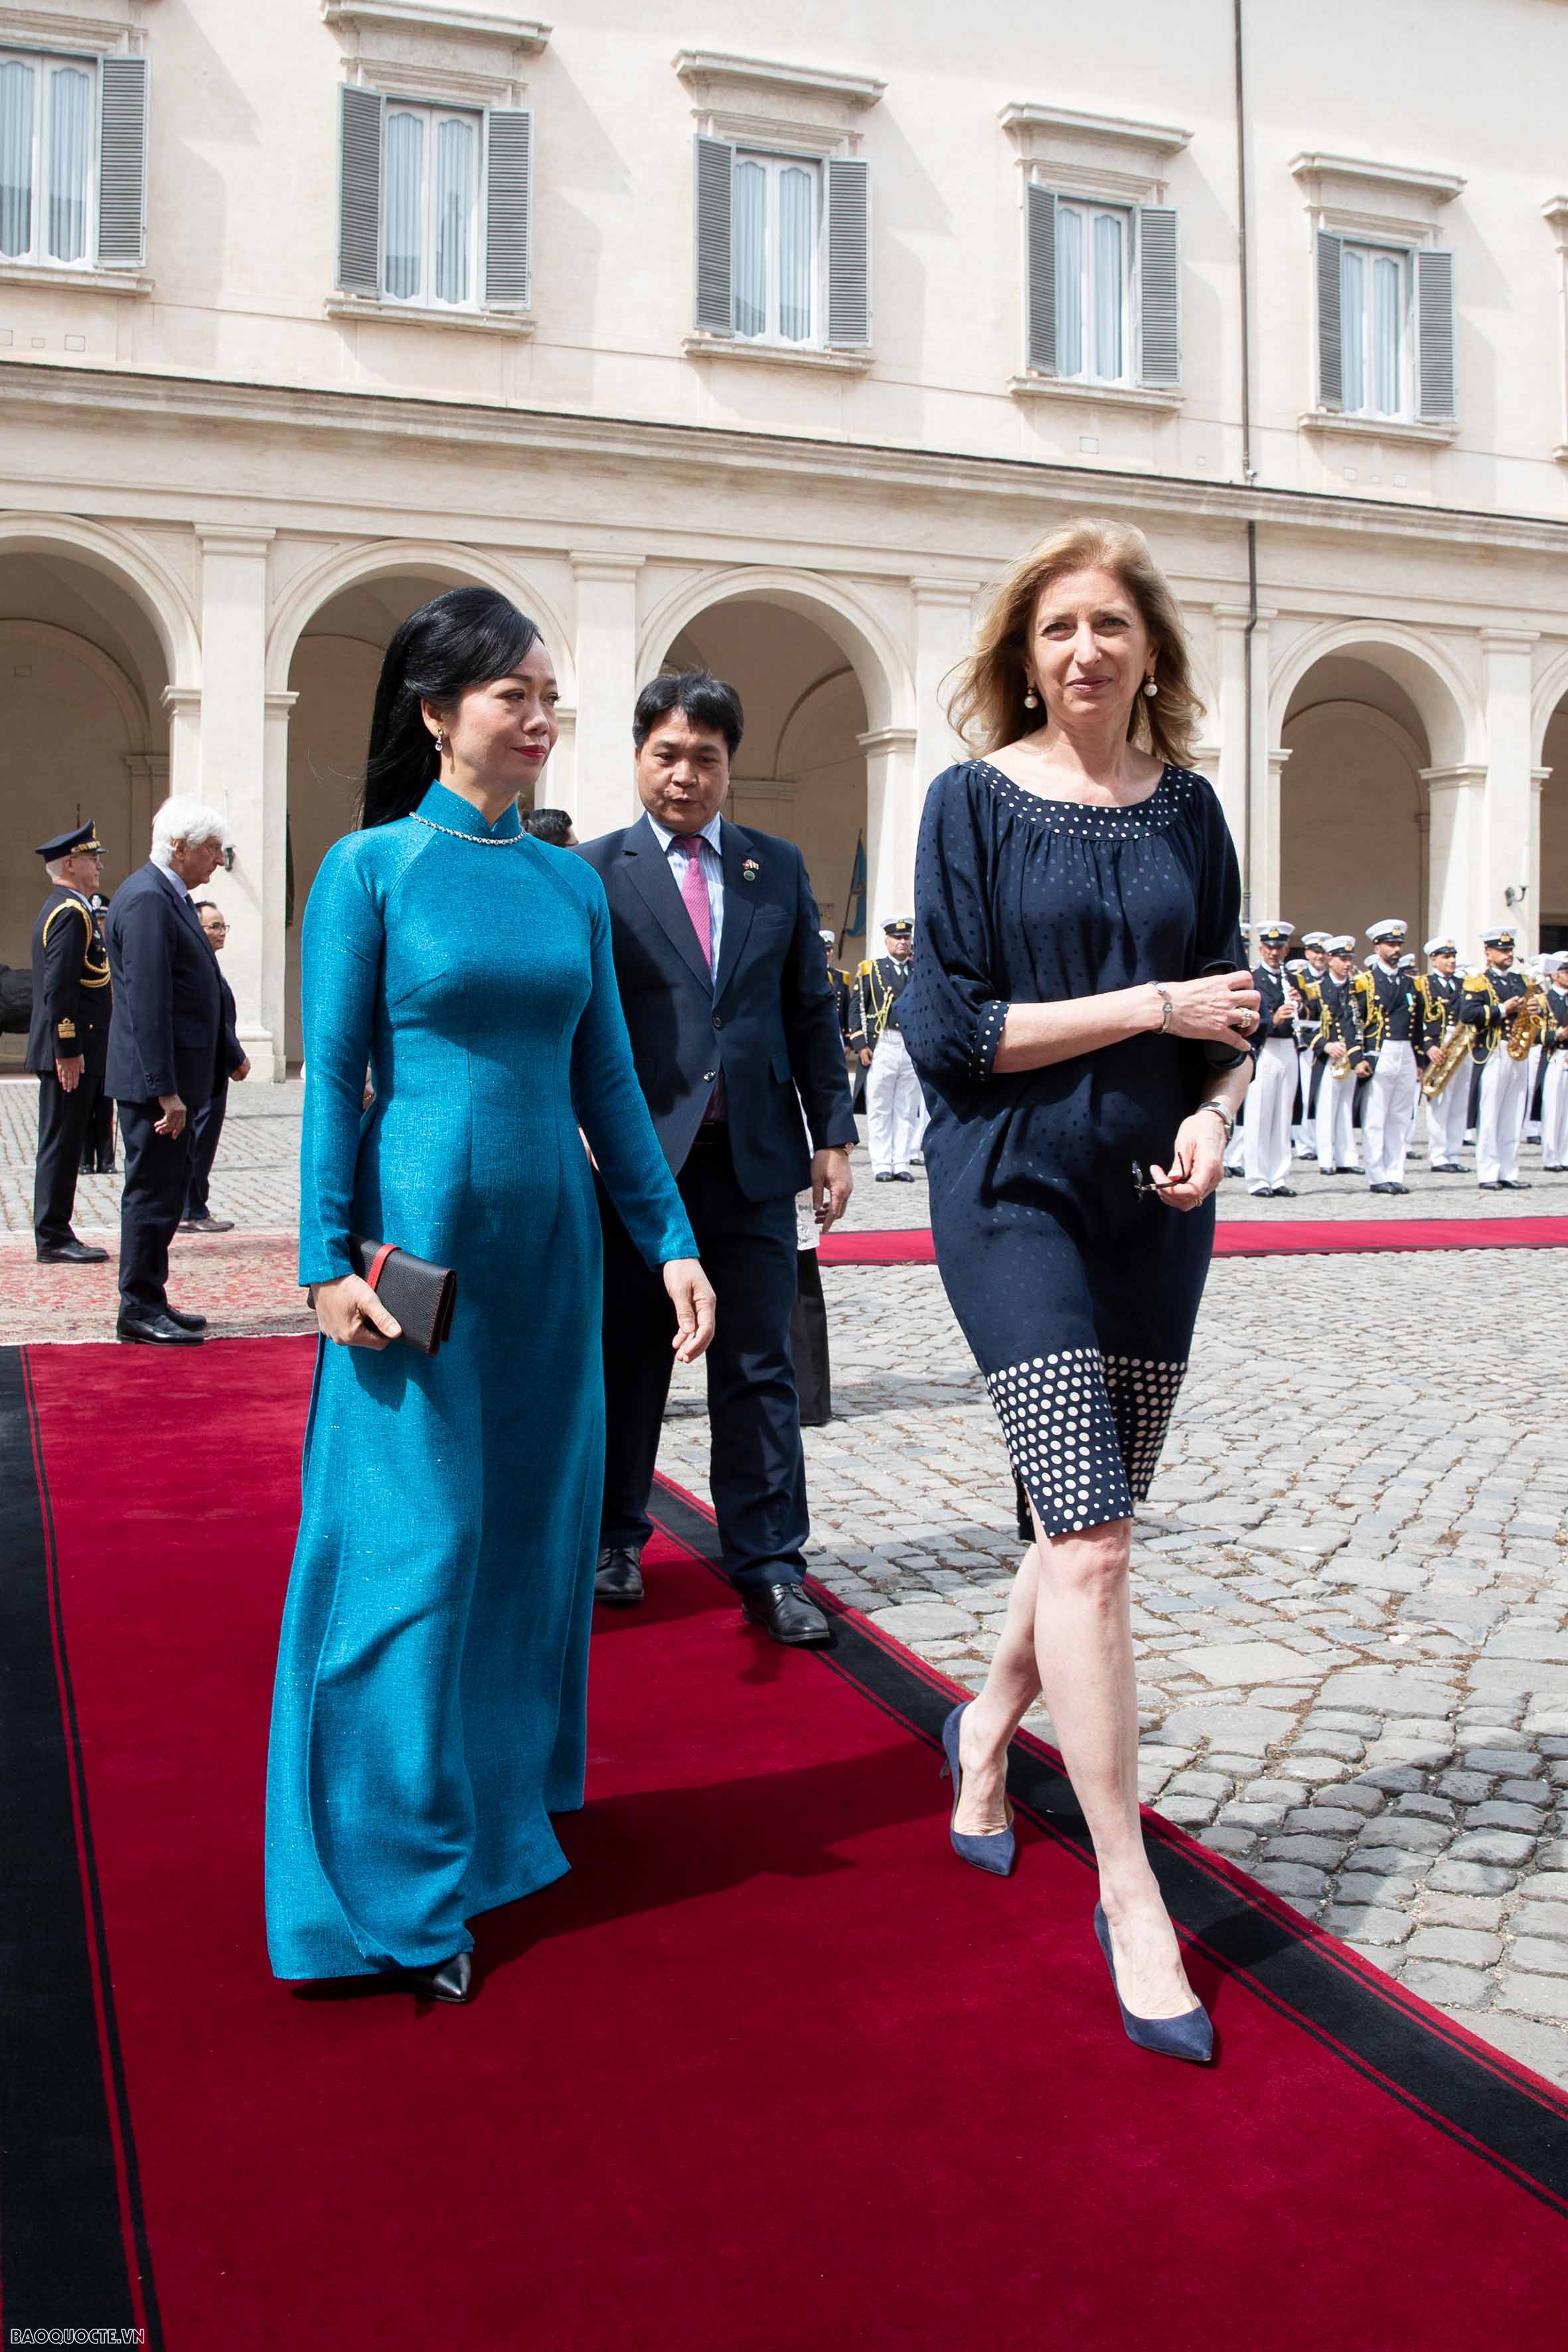 Phu nhân Chủ tịch nước tìm hiểu văn hoá, lịch sử đặc trưng của Áo và Italy